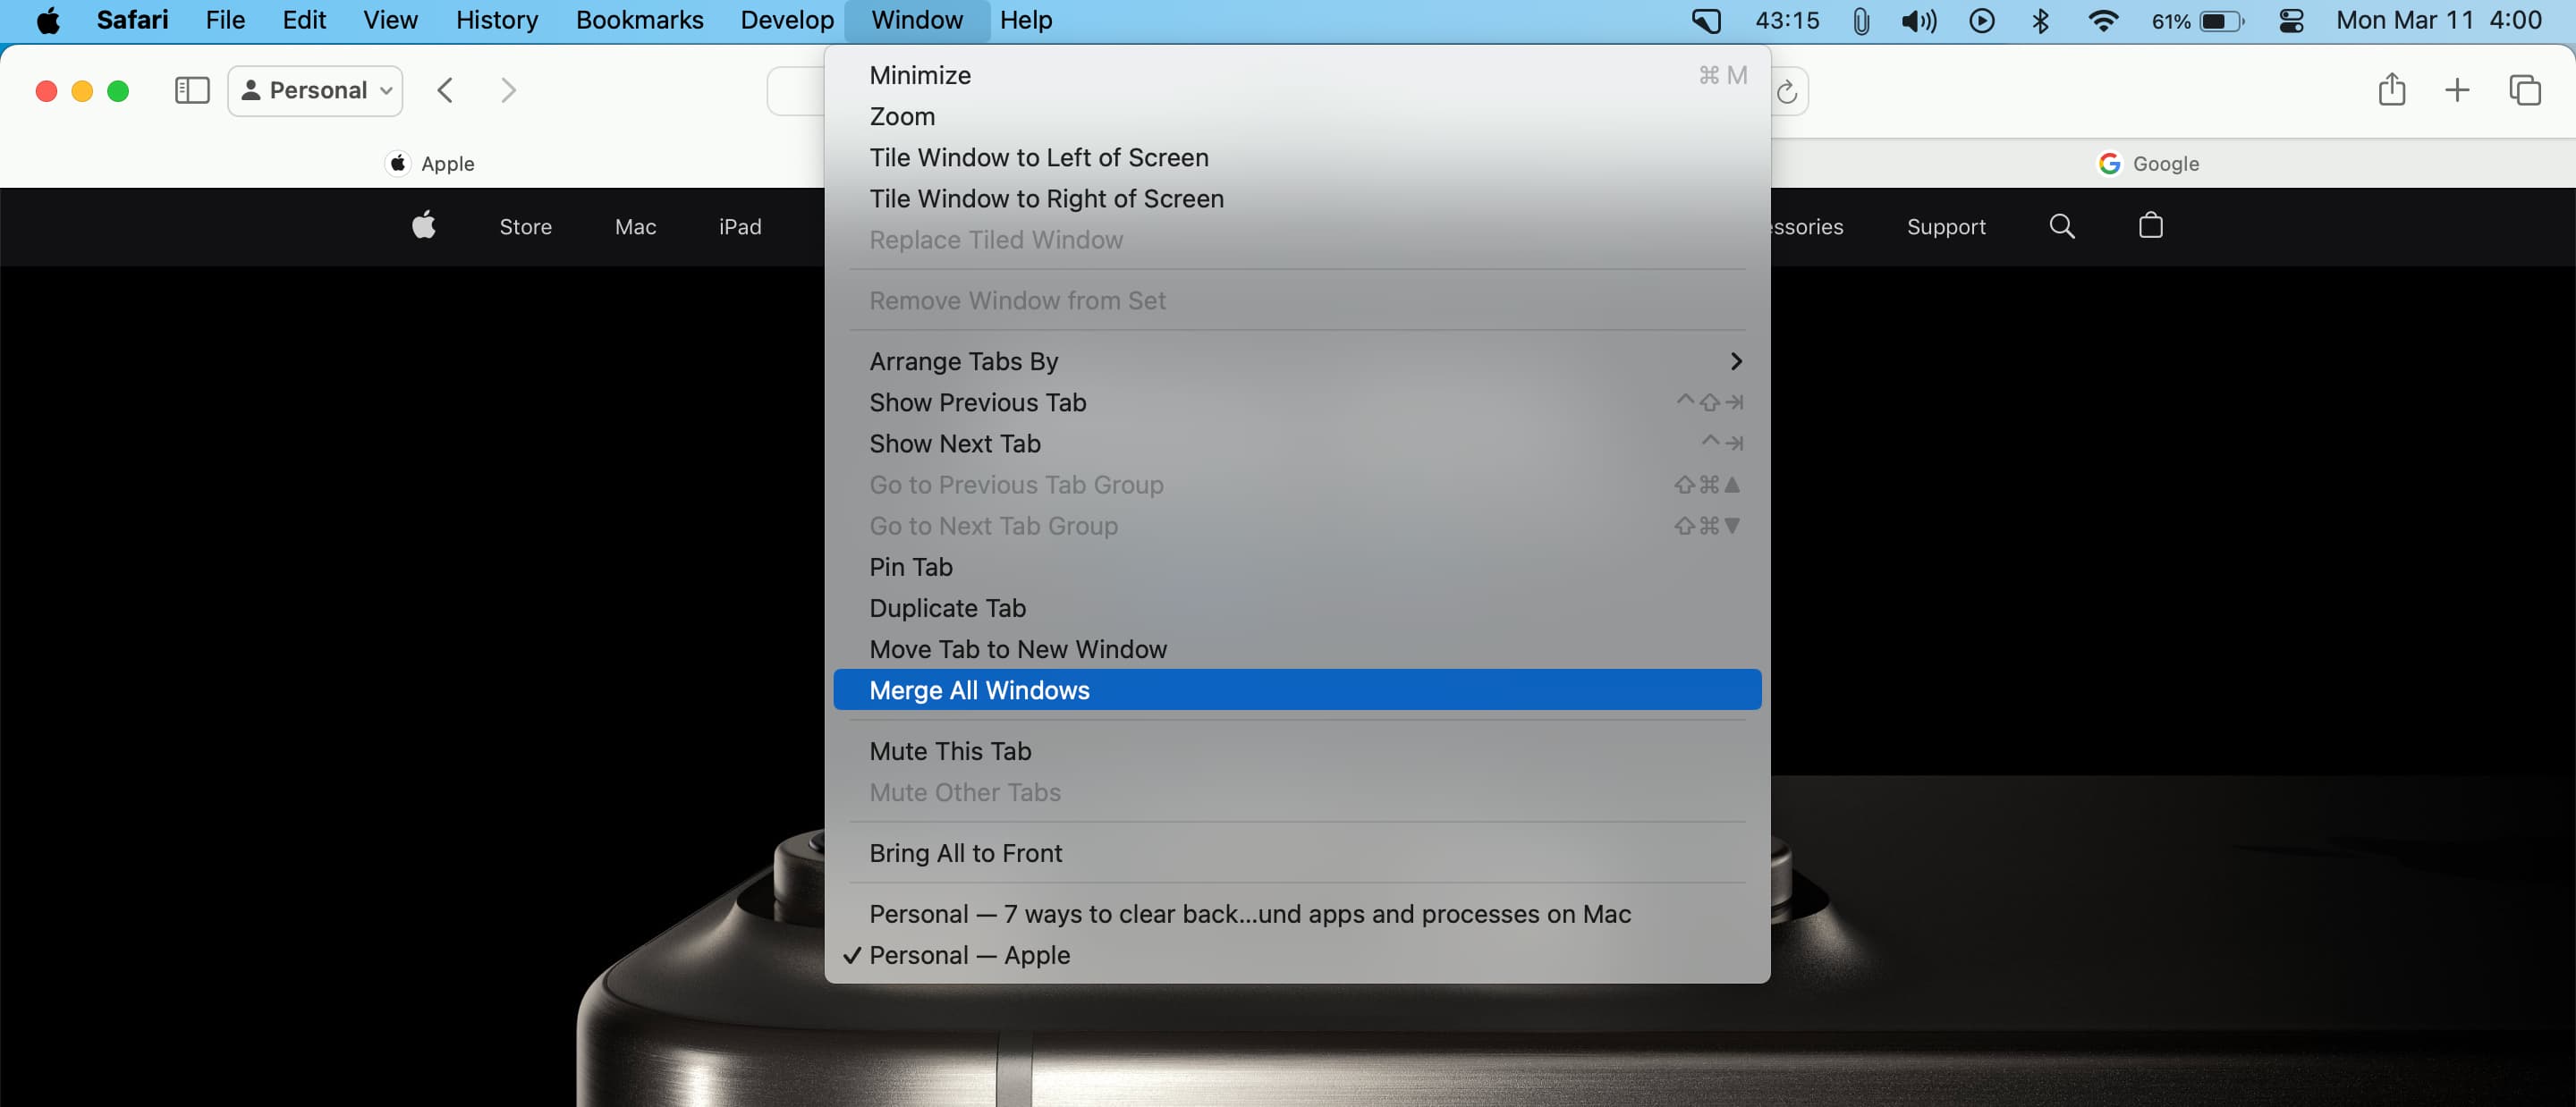 Merge All Windows in Safari on Mac